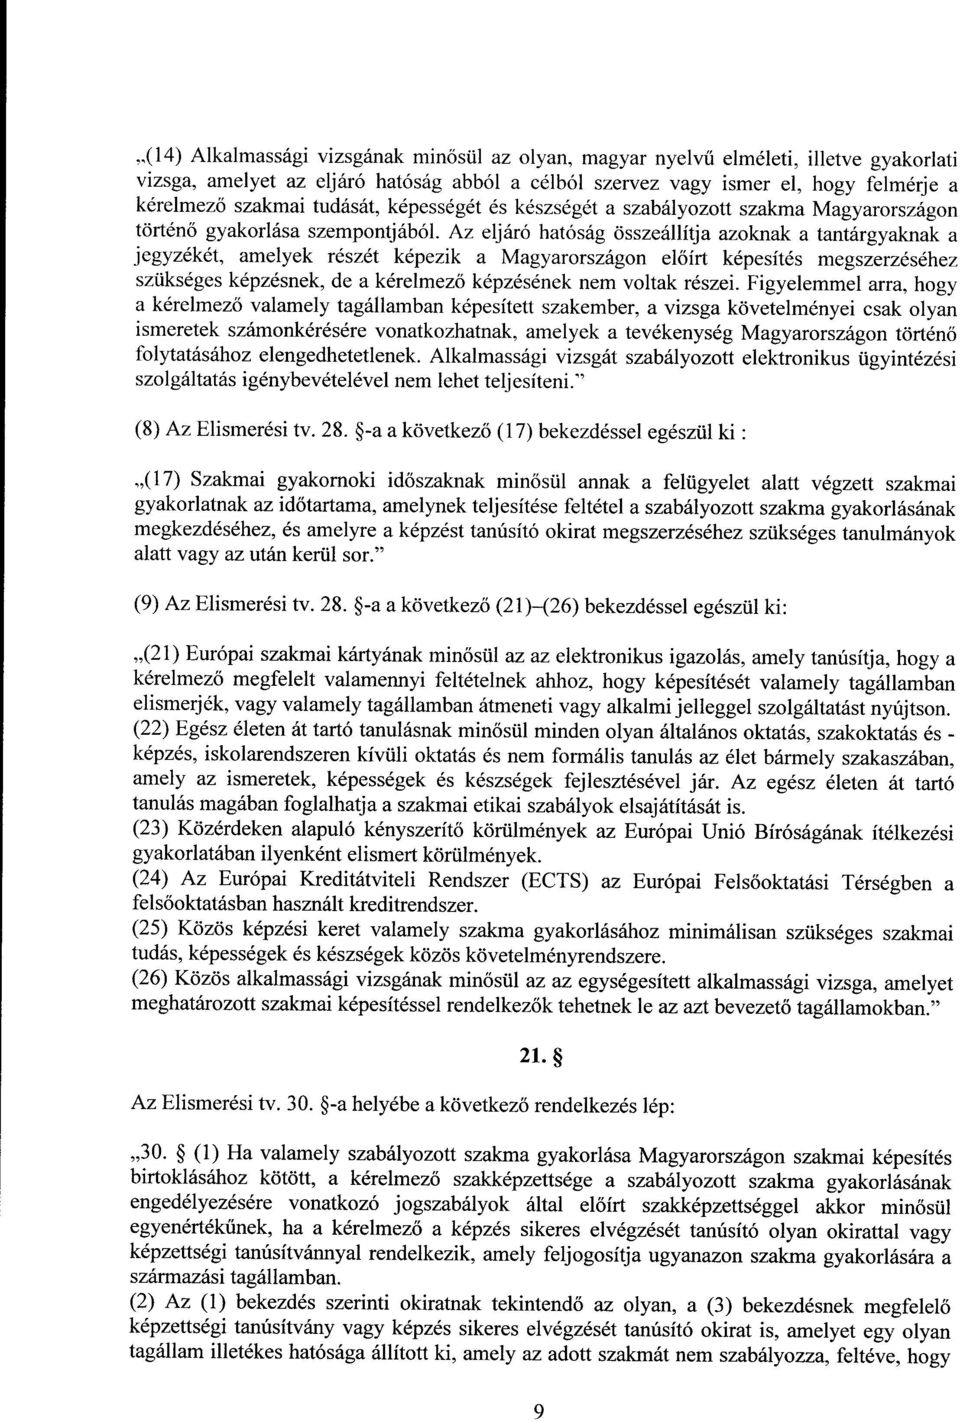 Az eljáró hatóság összeállítja azoknak a tantárgyaknak a jegyzékét, amelyek részét képezik a Magyarországon el őírt képesítés megszerzéséhe z szükséges képzésnek, de a kérelmez ő képzésének nem